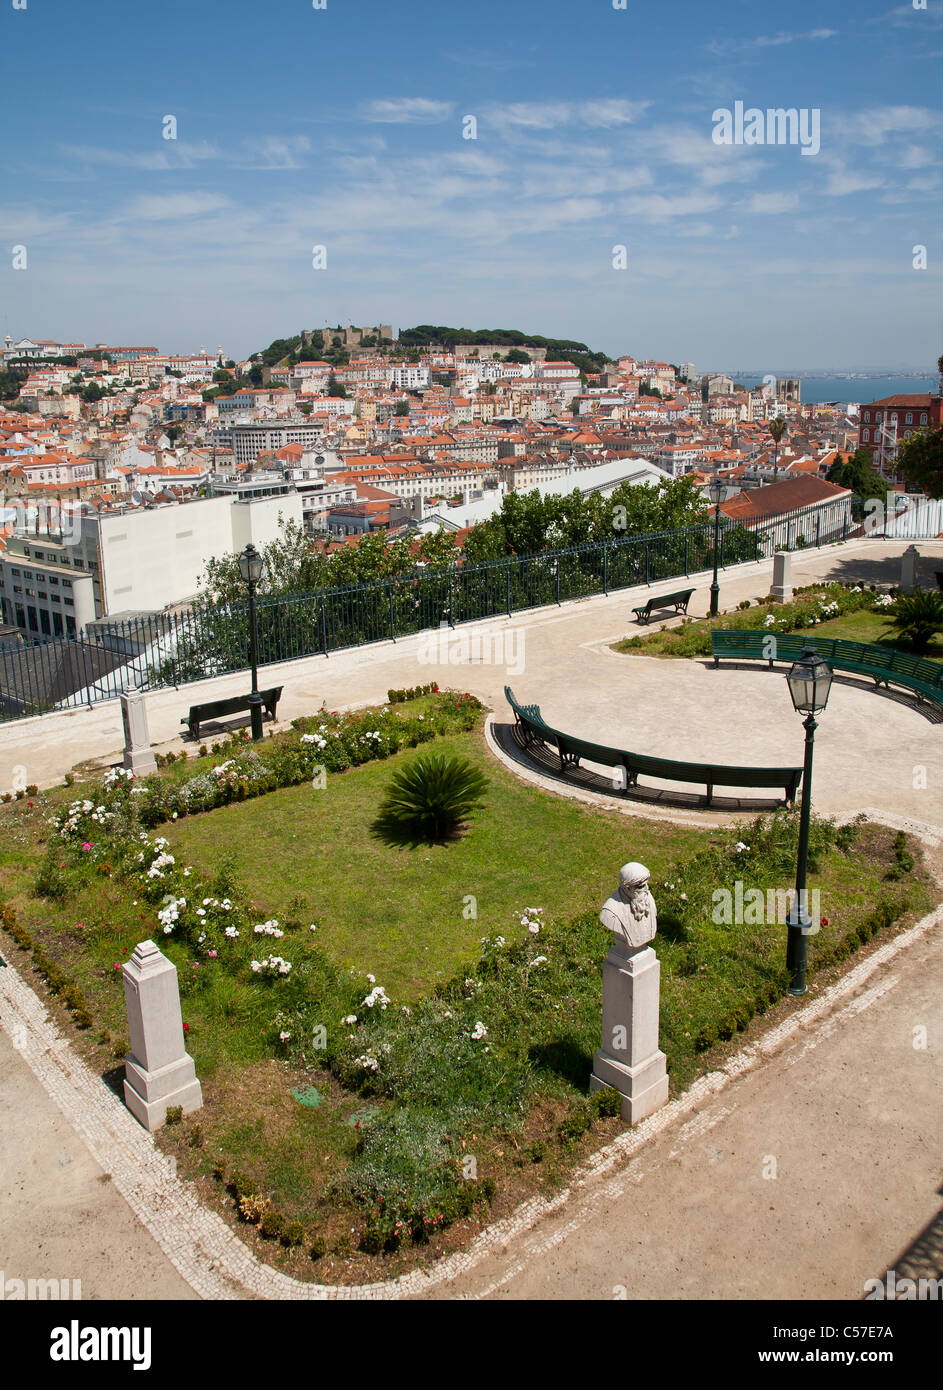 View from the Miradouro de Sao Pedro de Alcantara over the rooftops of Lisbon. Stock Photo